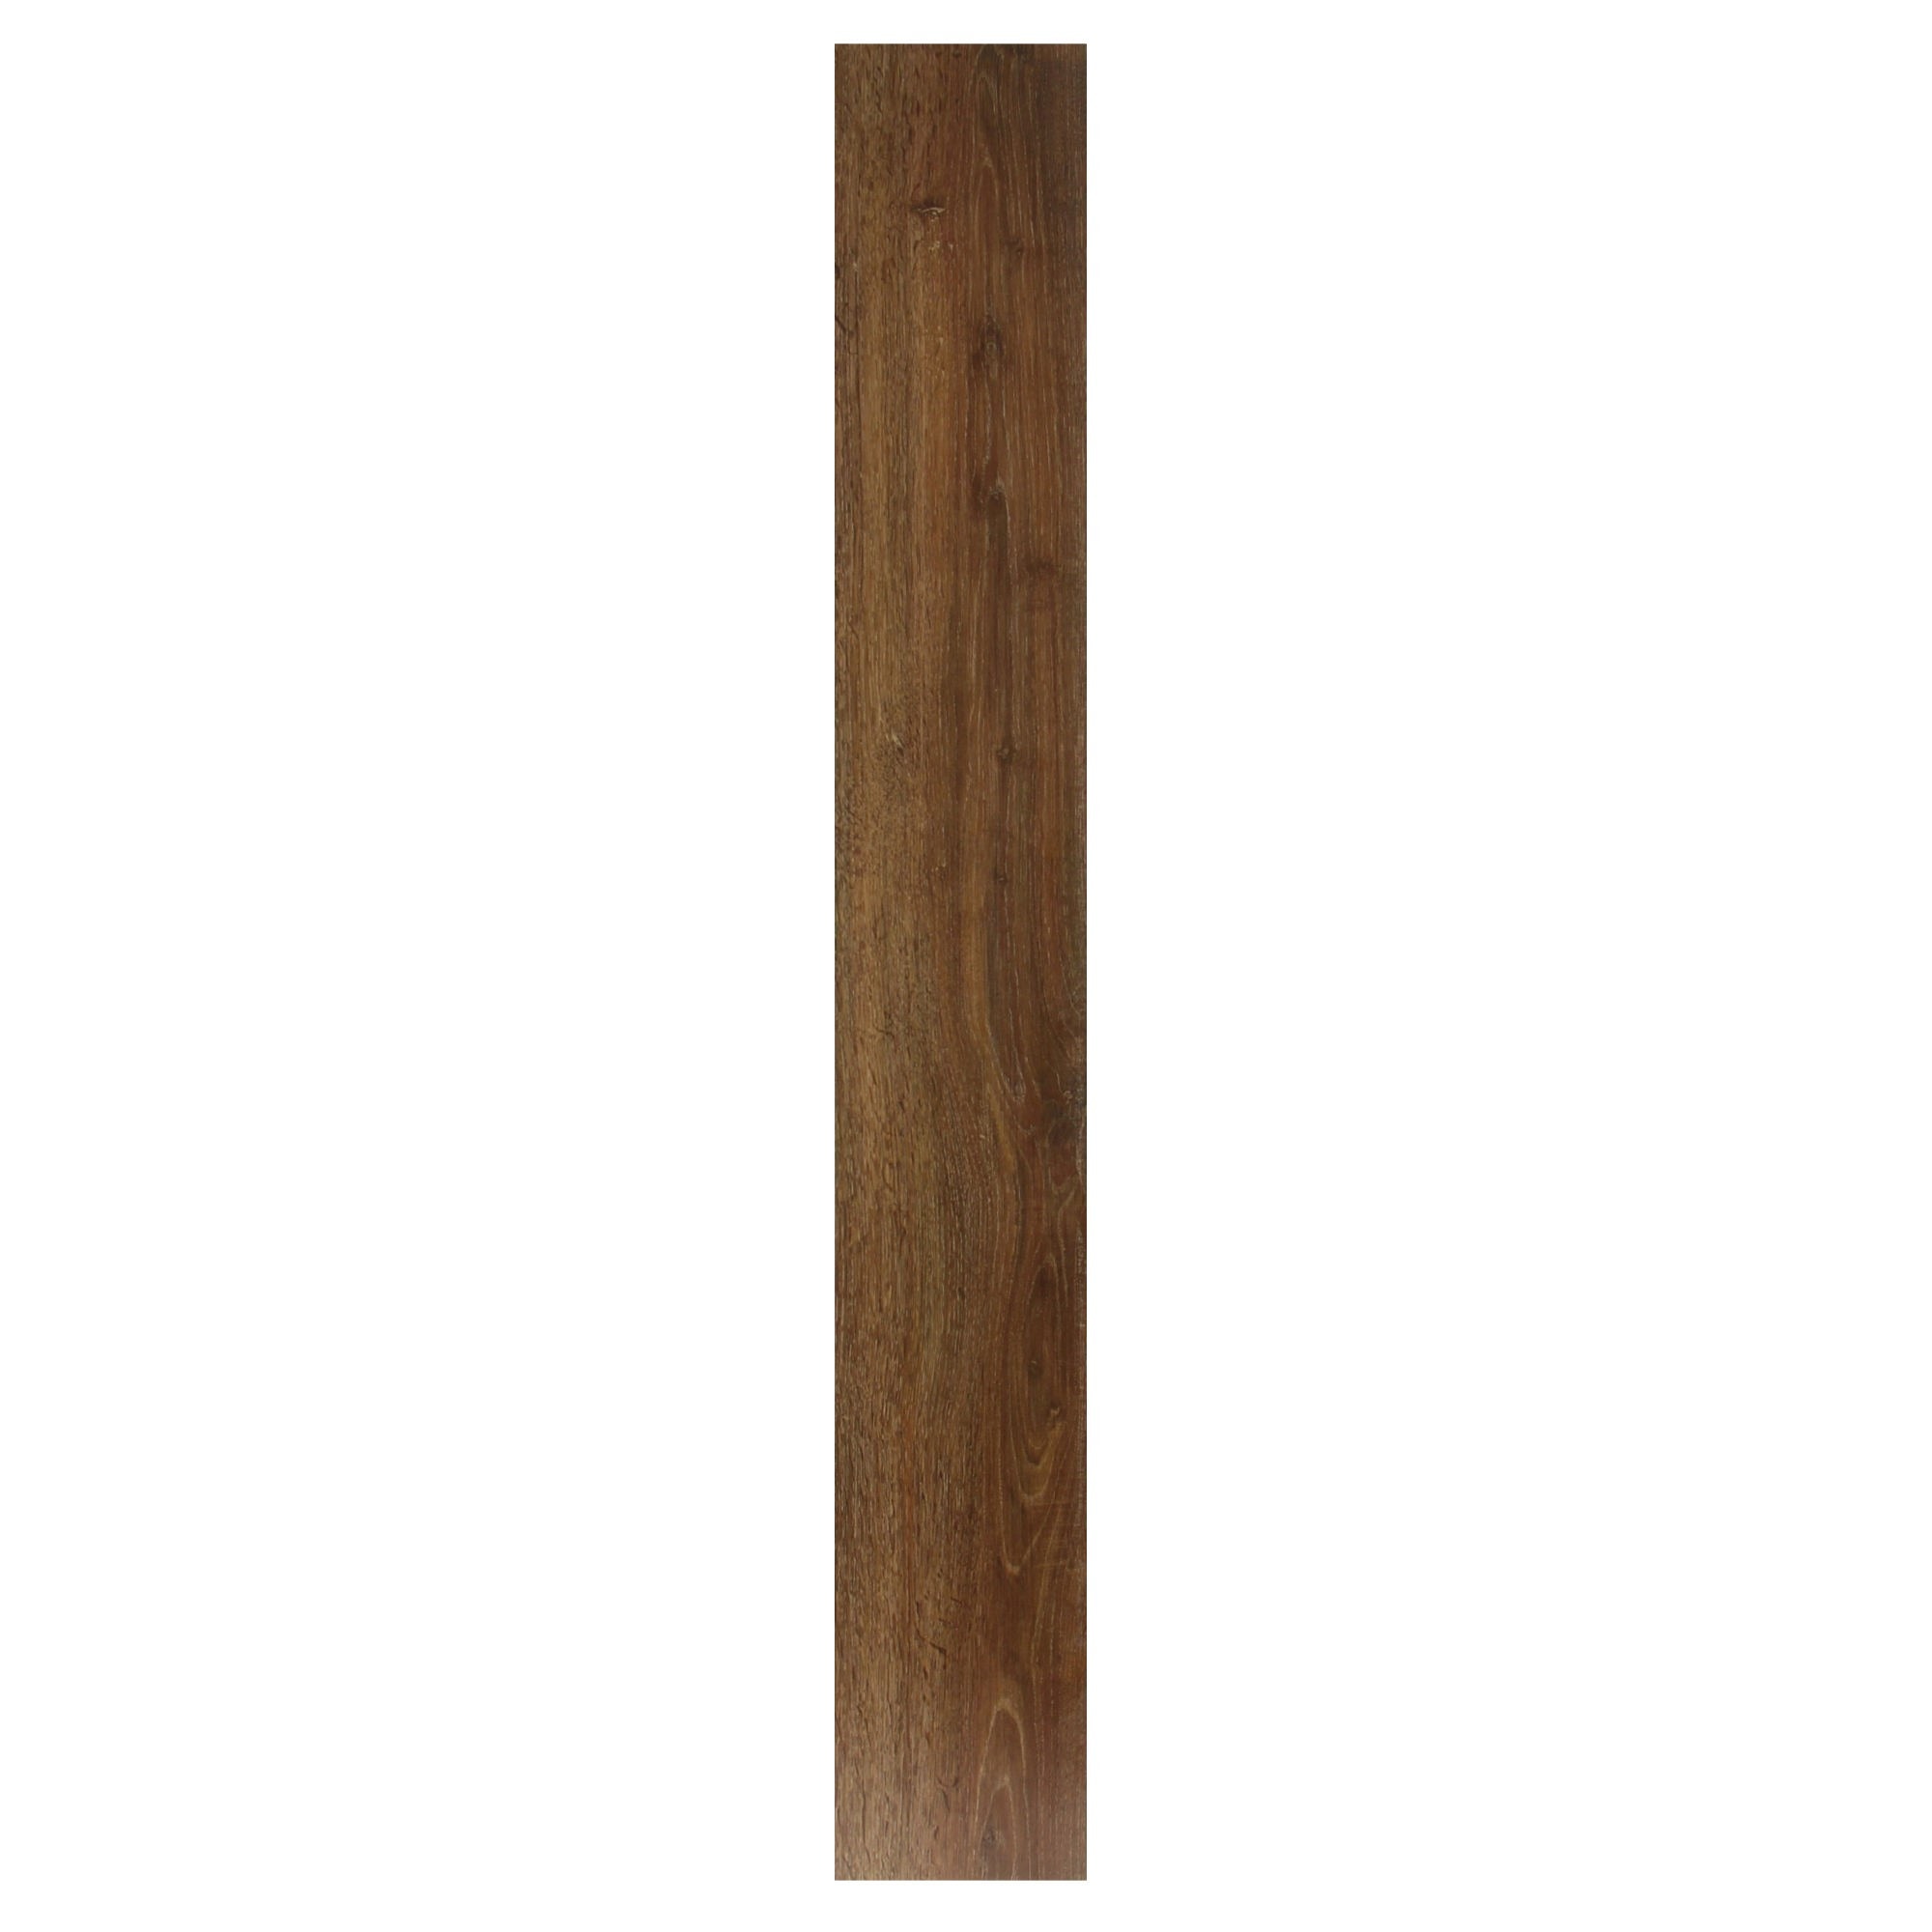 Parchet laminat 8 mm cordoba oak Floorpan FP170 clasa 31